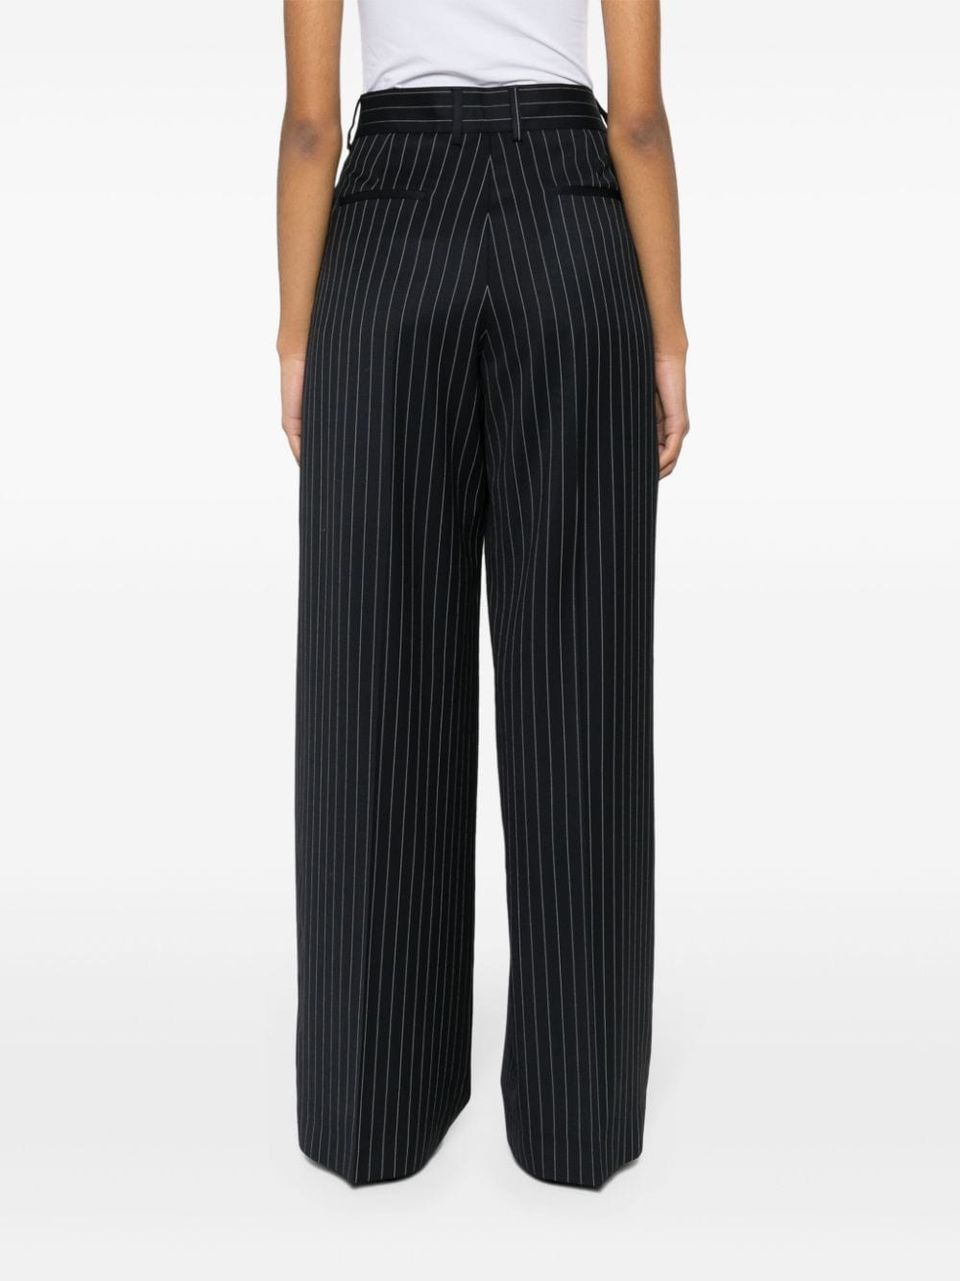 Pinstripe pattern trousers